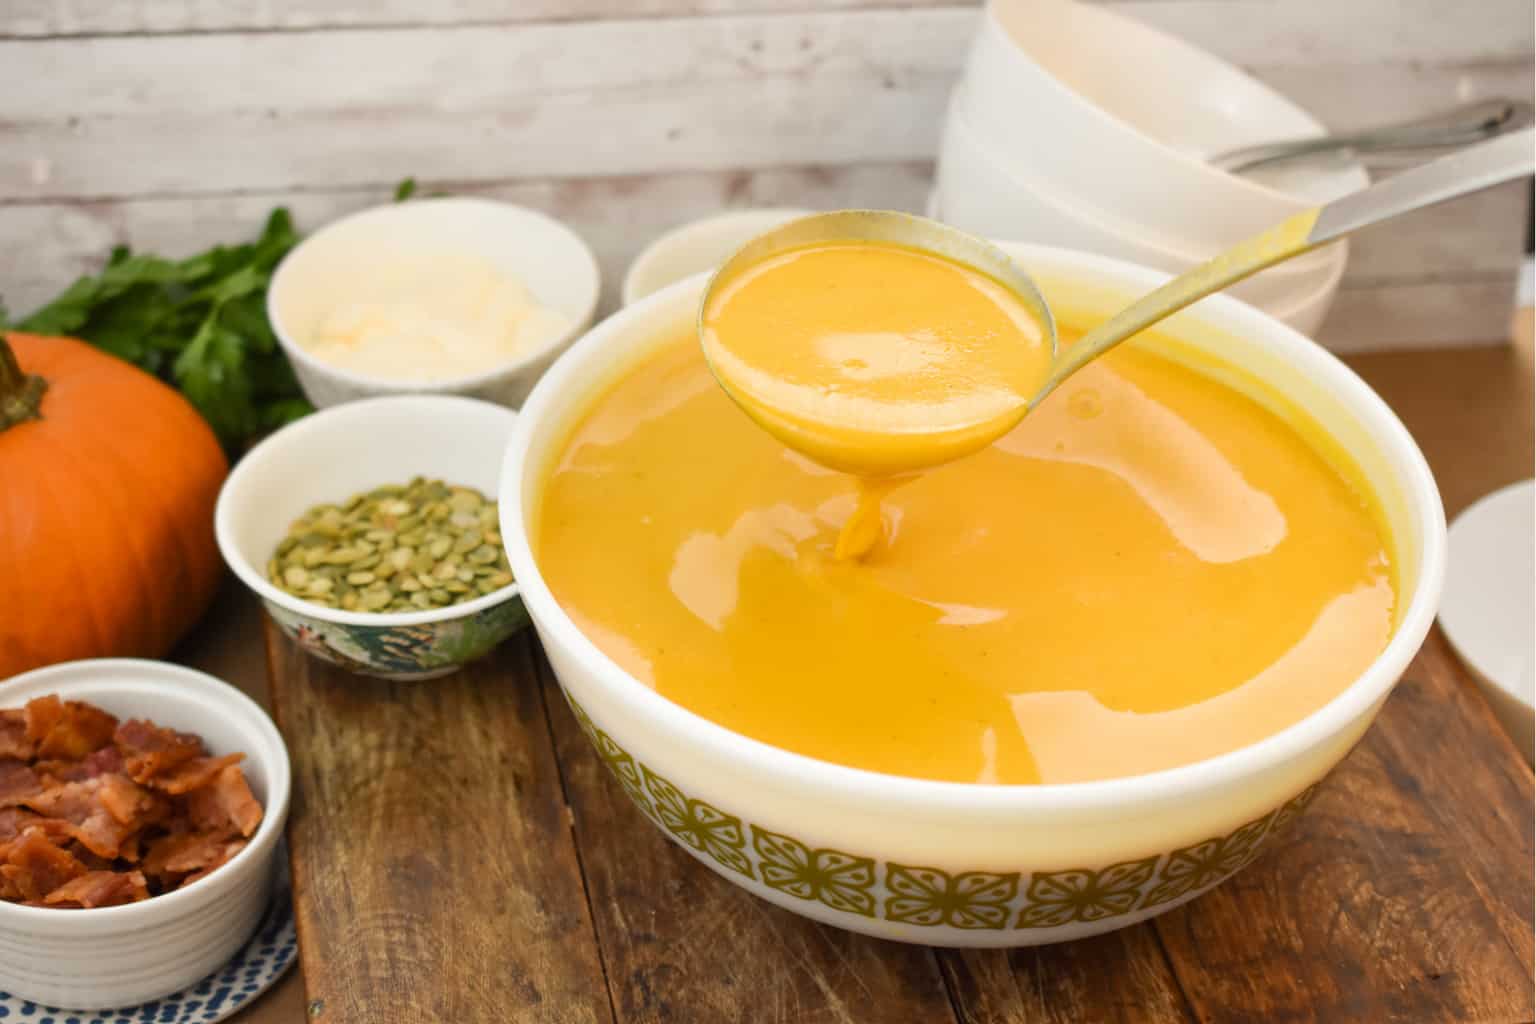 keto pumpkin soup with a large ladle